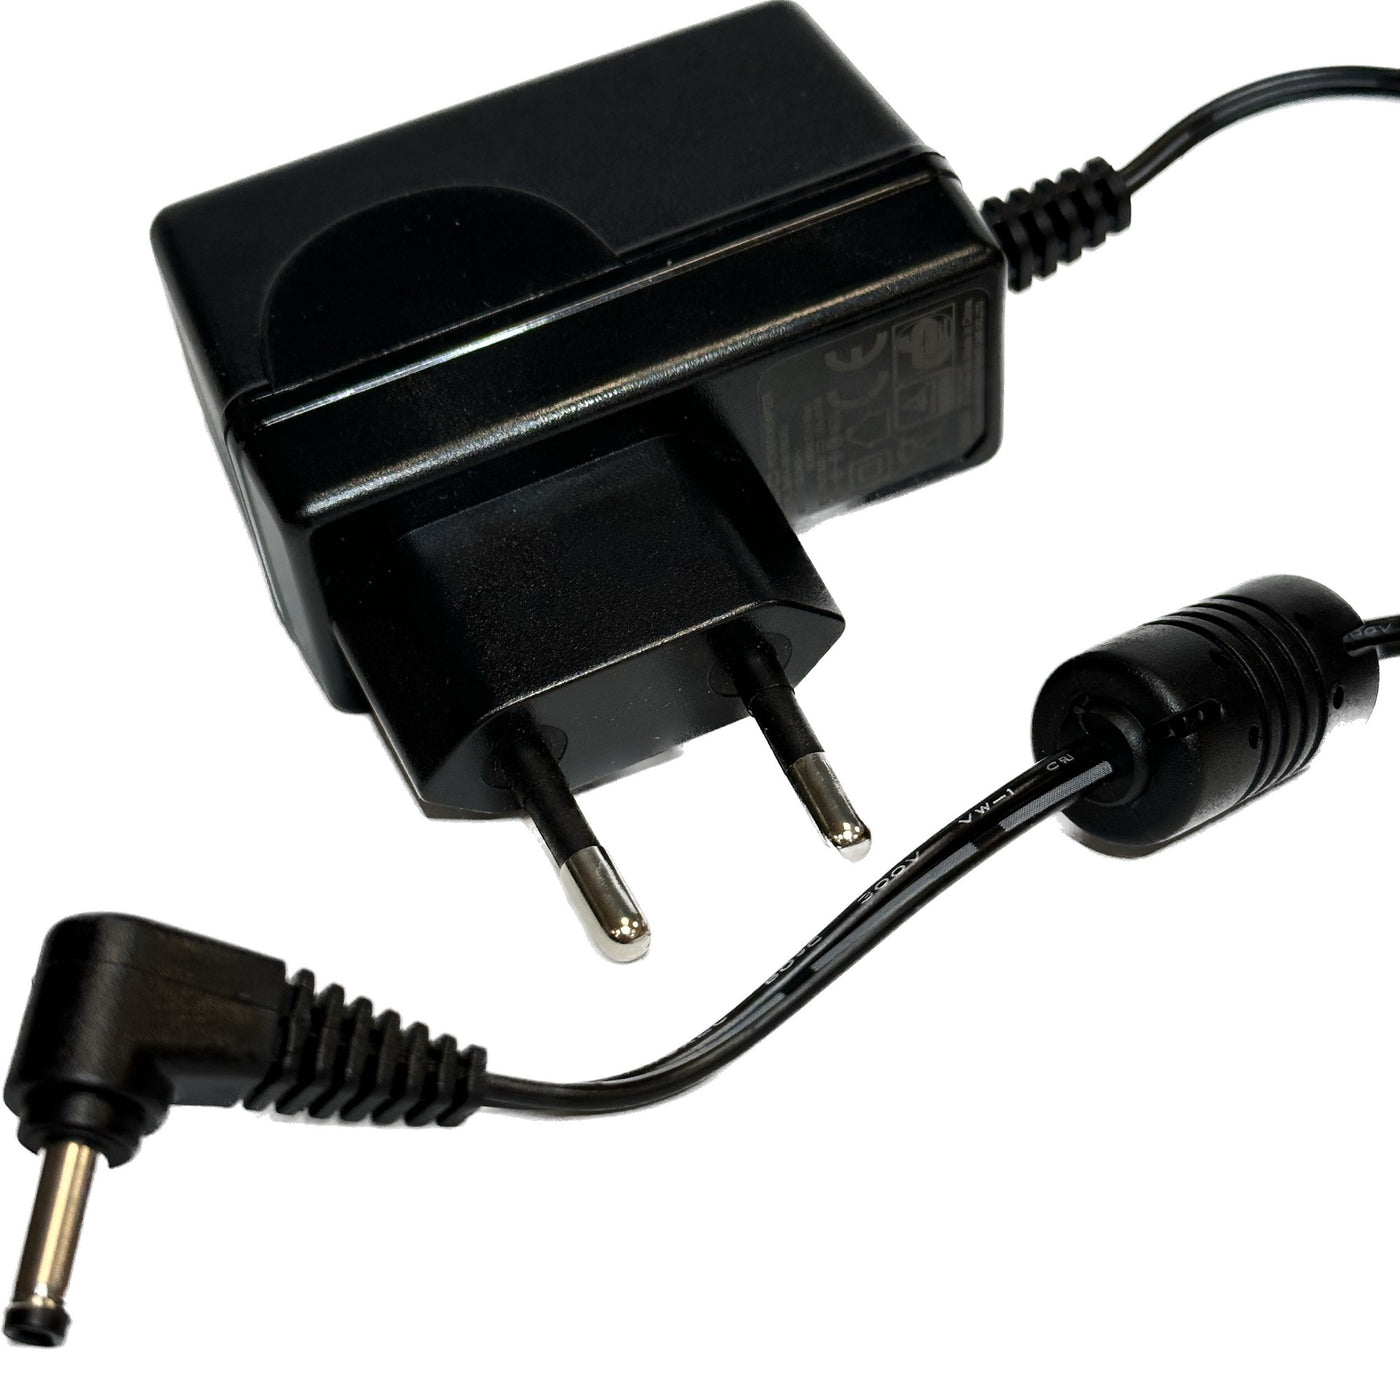 P001918 - Adapter for multiple DVP models